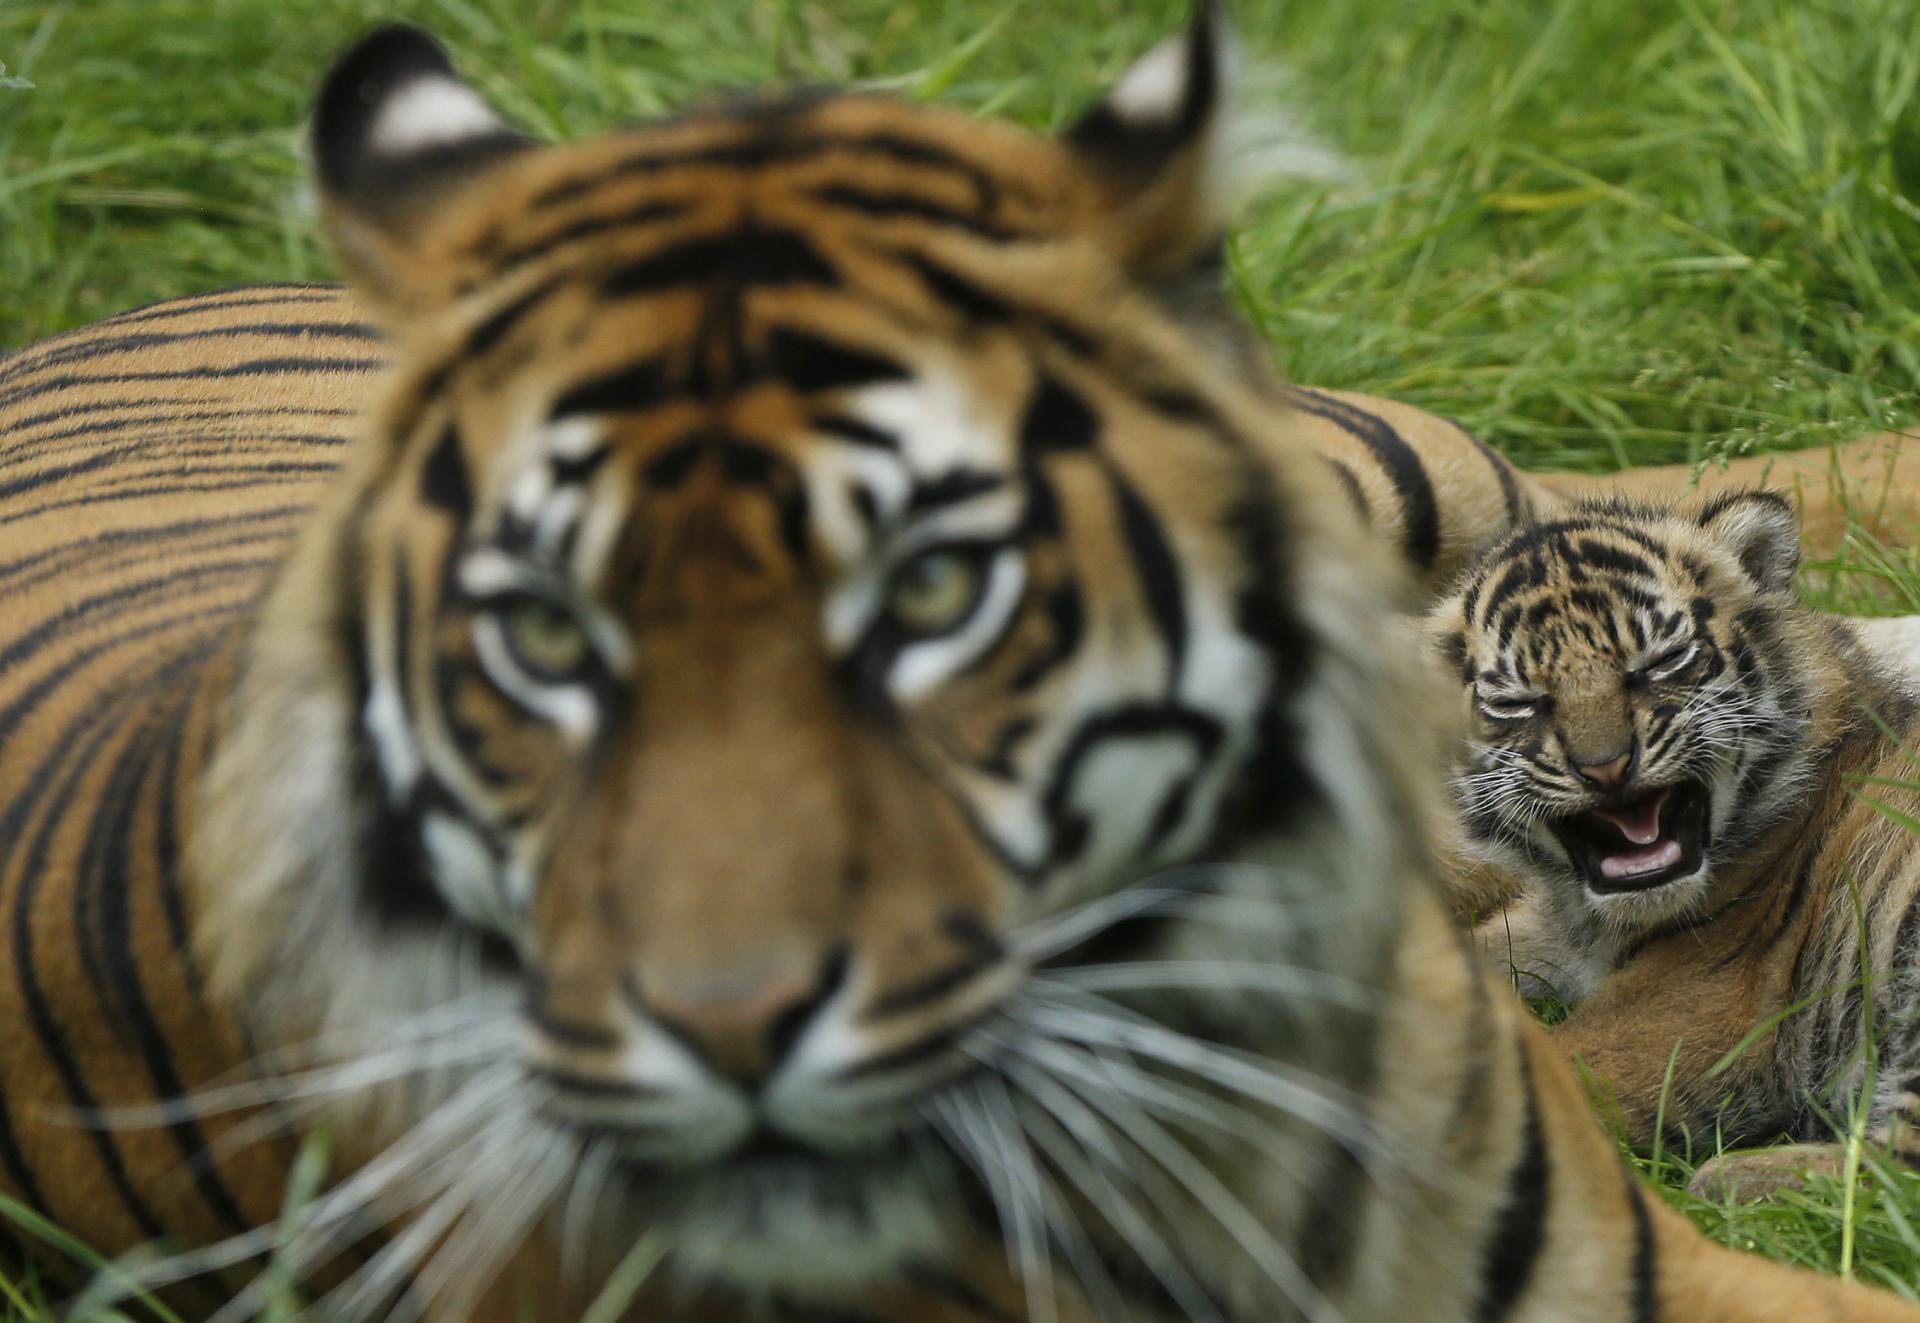 Zoo v Pakistane zatvorili, medzi tigrami našli mŕtveho muža